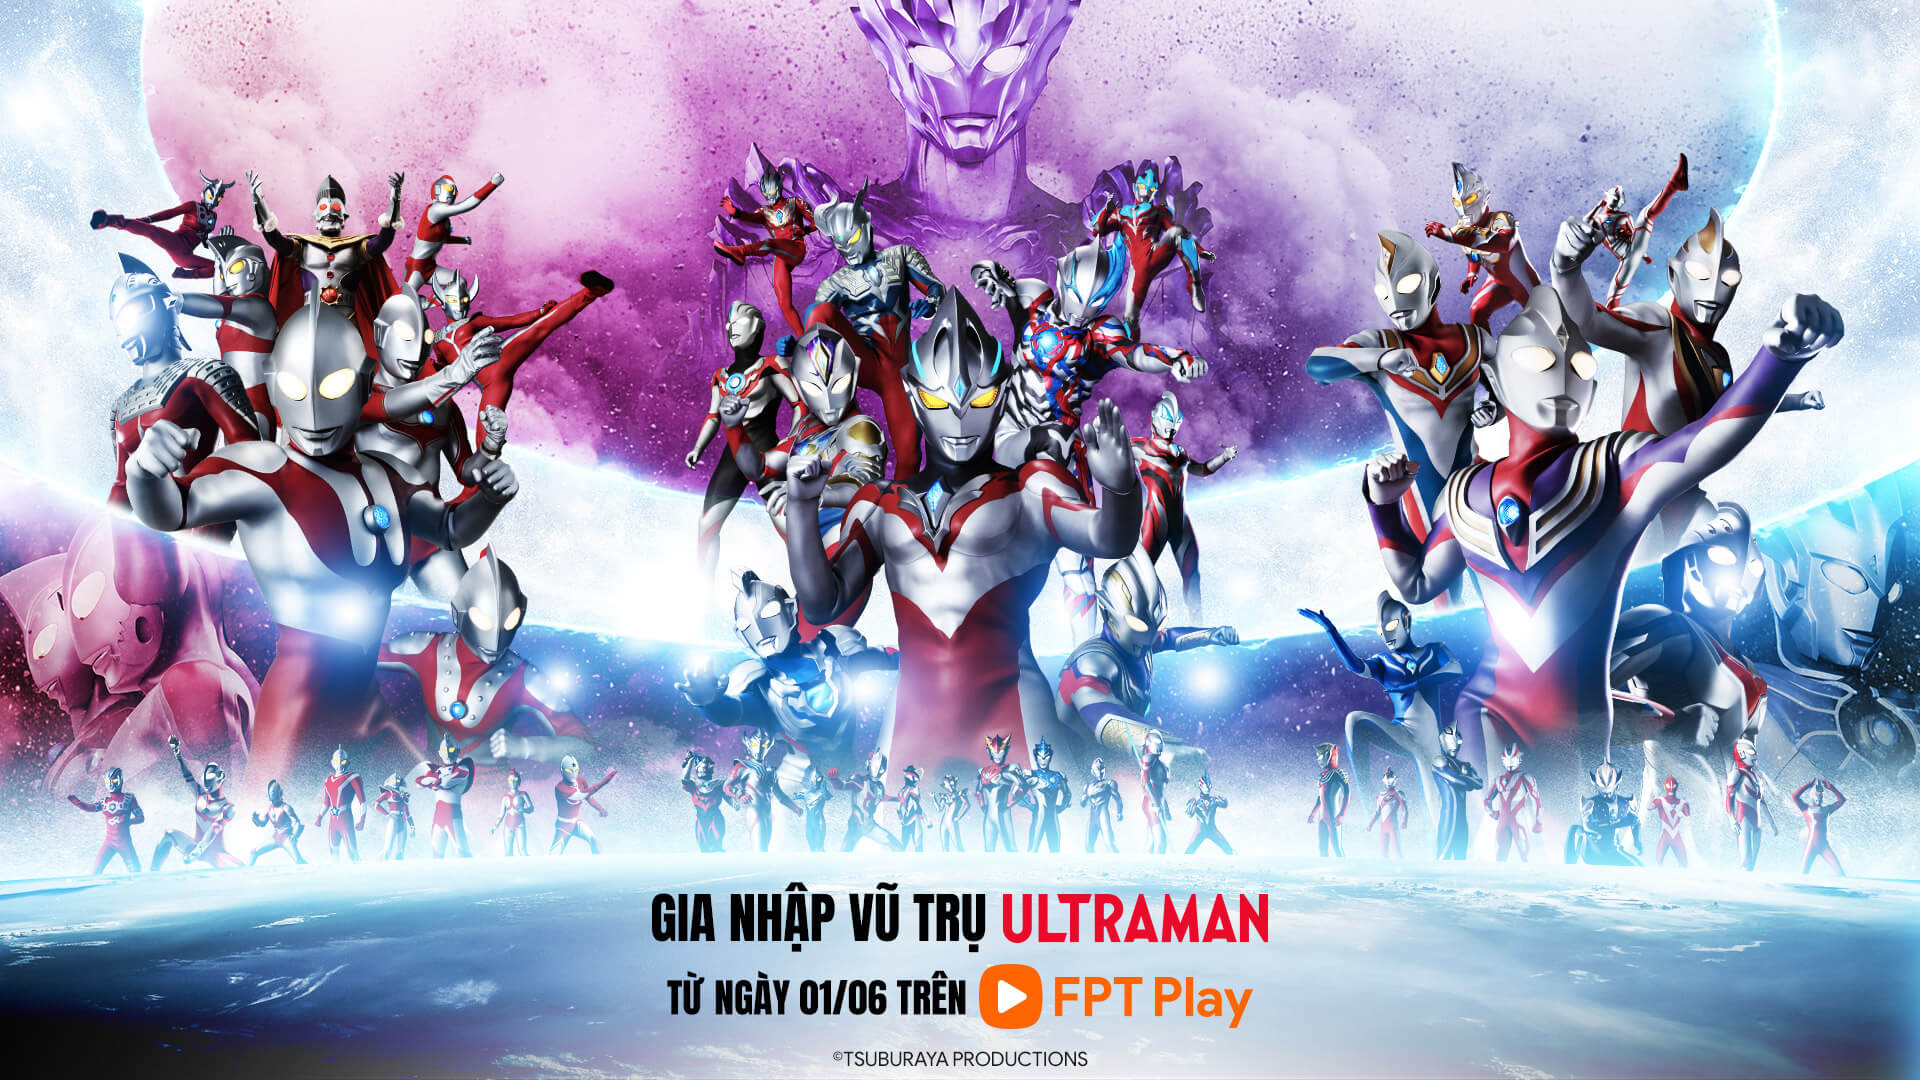 Ultraman - Siêu Nhân Điện Quang khởi chiếu độc quyền trên FPT Play từ ngày 01/06 